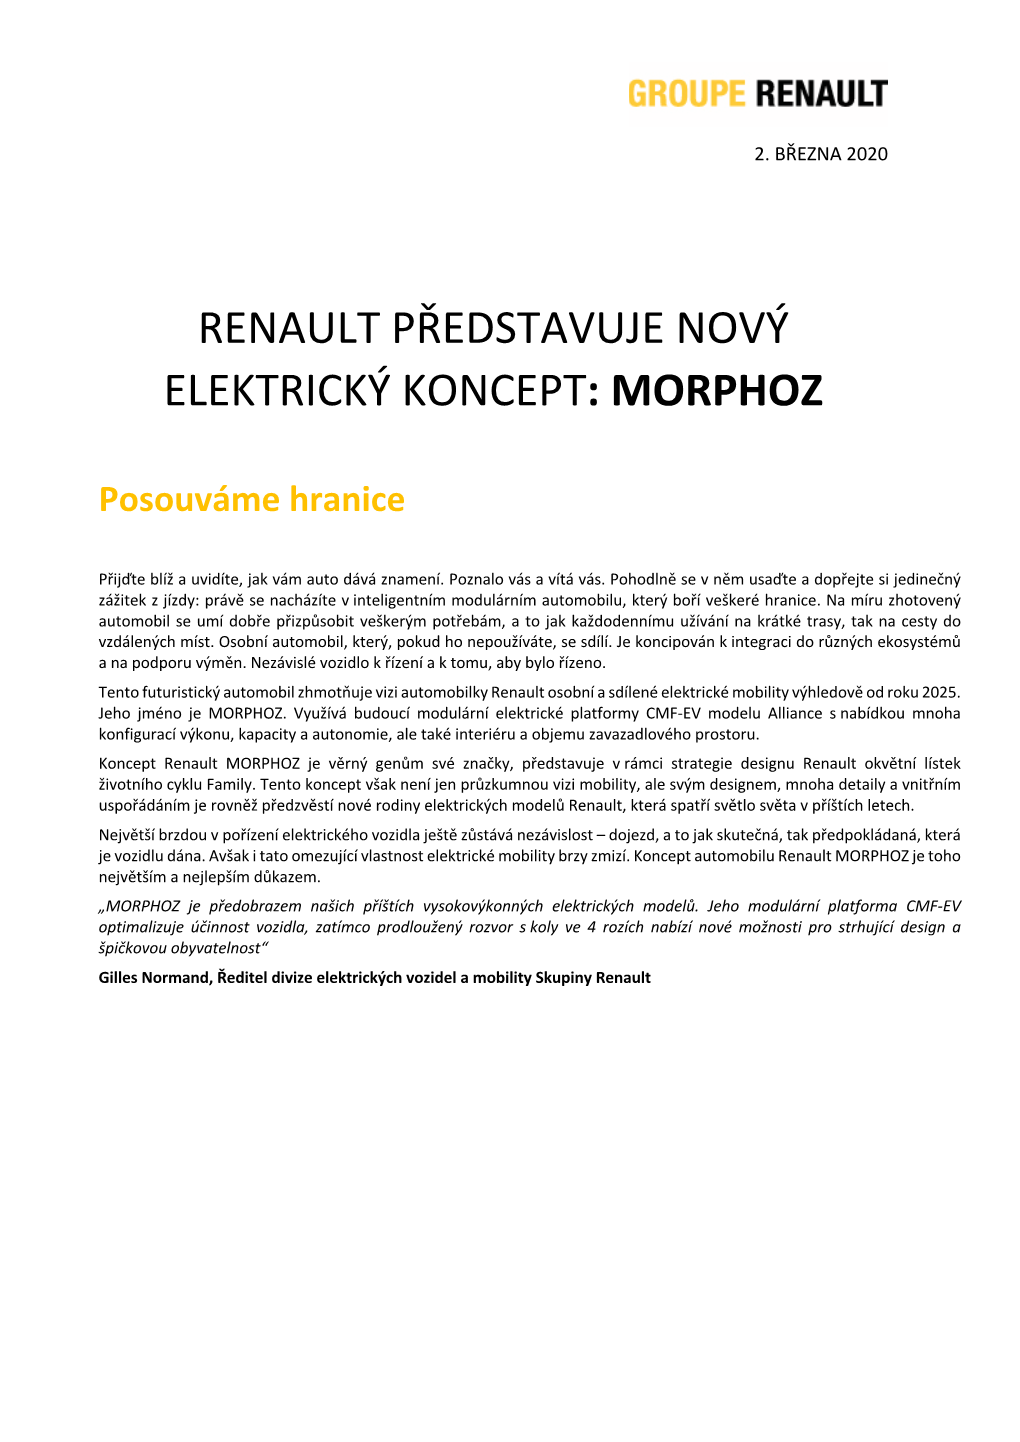 Renault Představuje Nový Elektrický Koncept: Morphoz